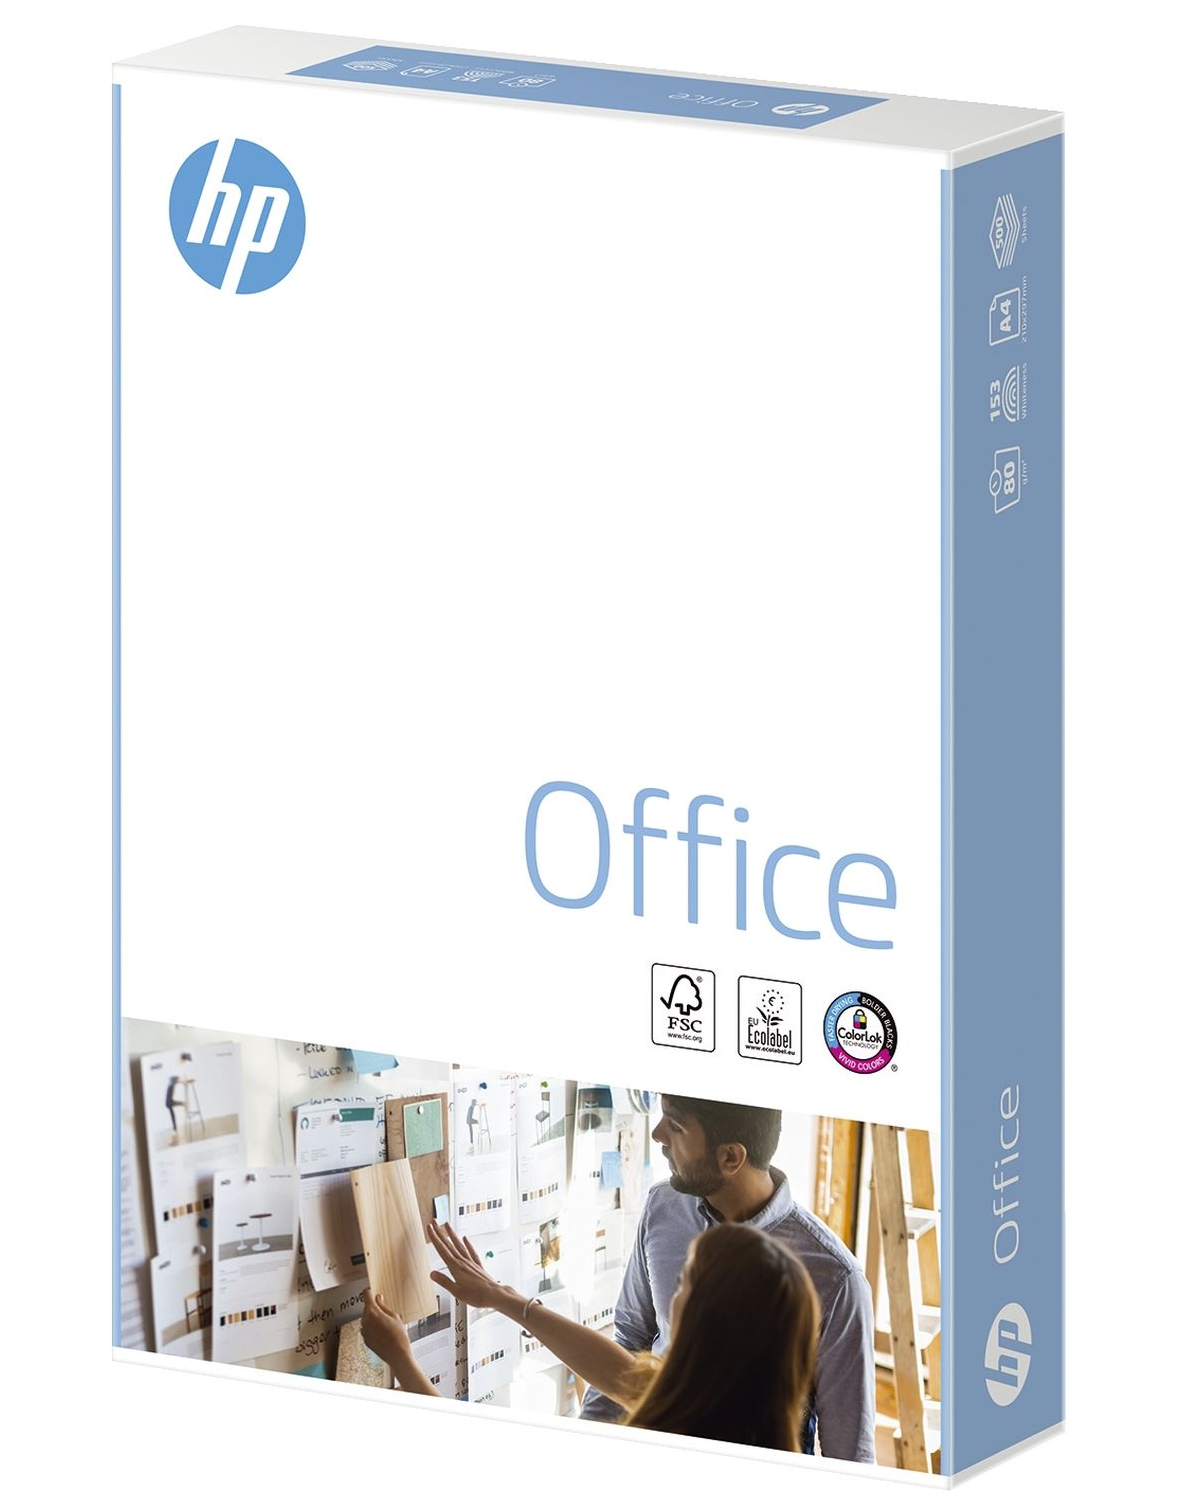 HP 500 Office 210 Blatt 297 Kopierpapier Druckerpapier x A4 CHP110 mm Druckerpapier